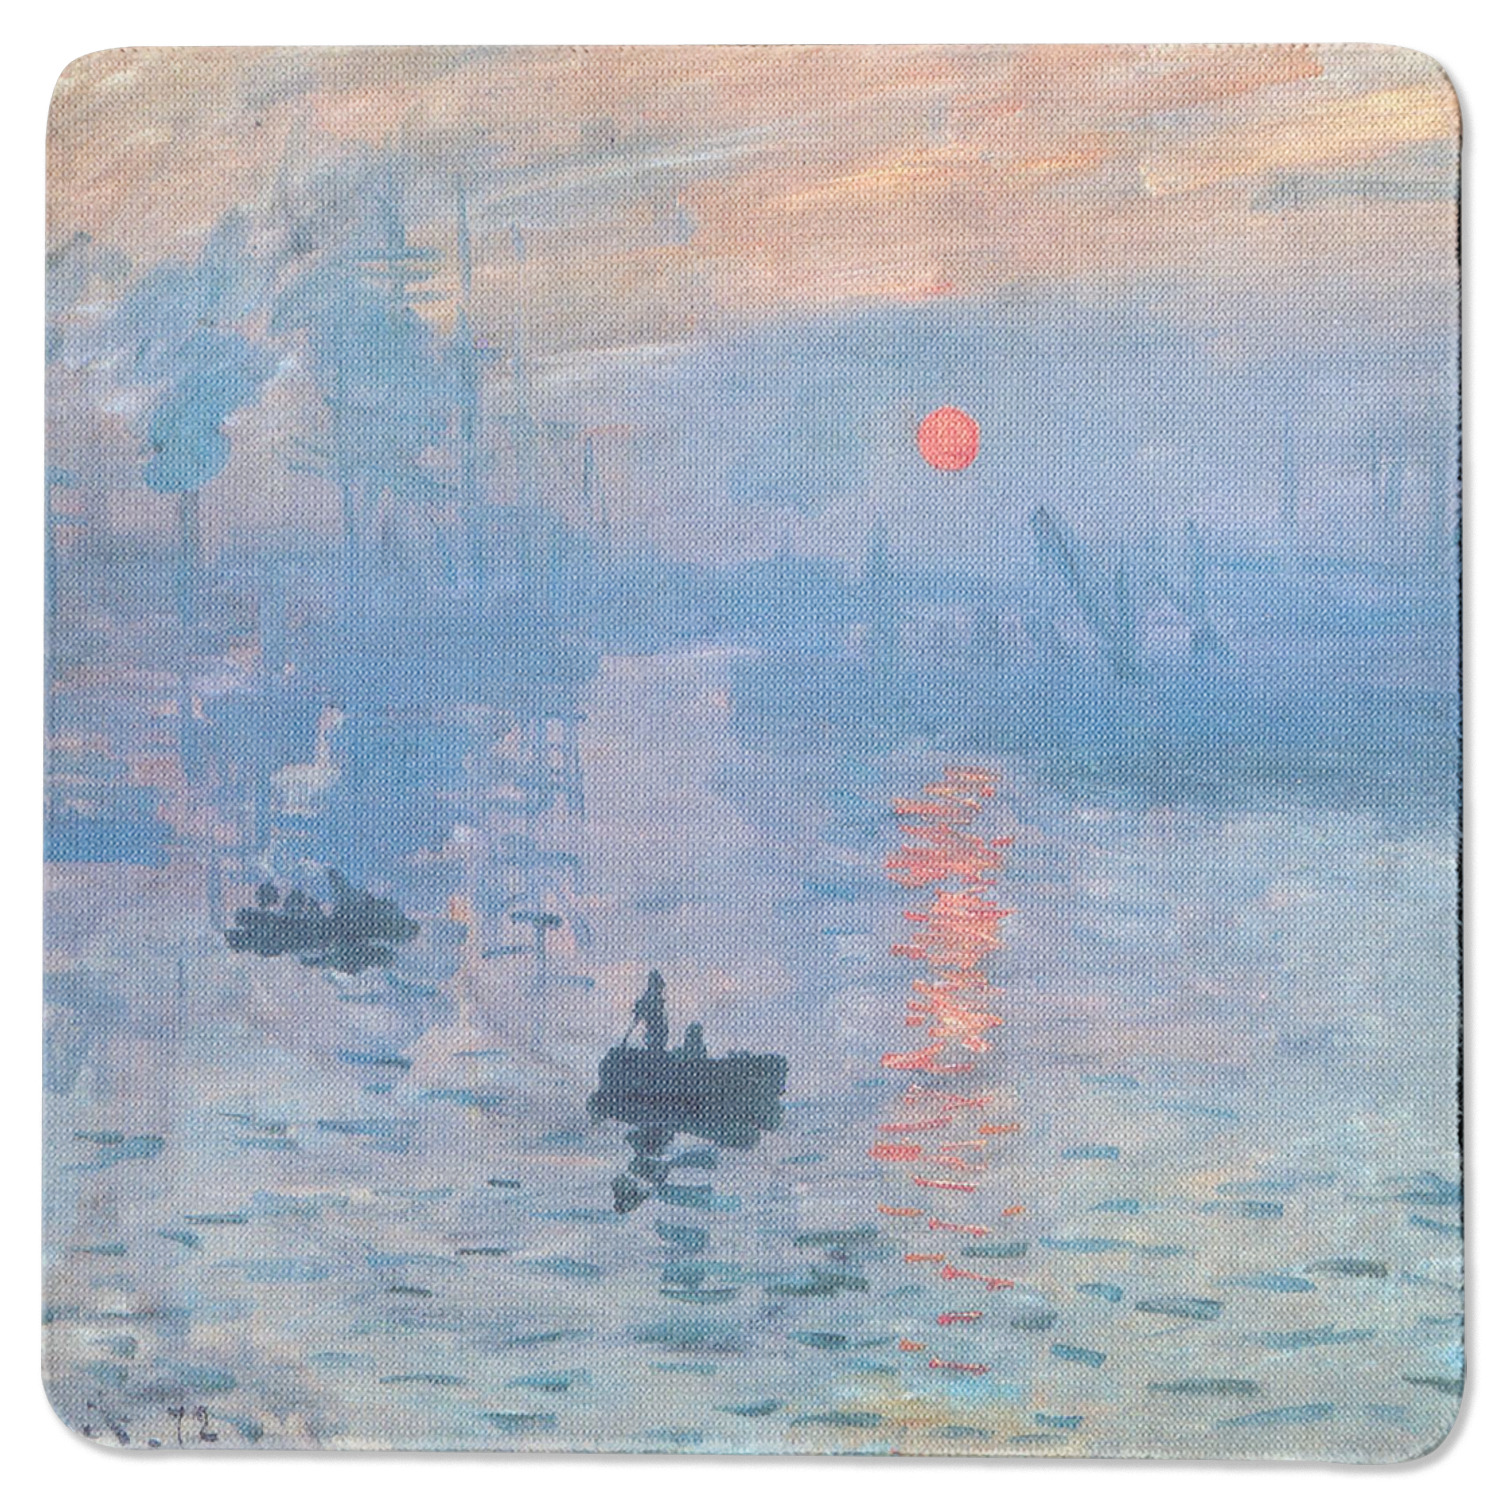 Custom Impression Sunrise by Claude Monet Rubber Backed Coaster ...